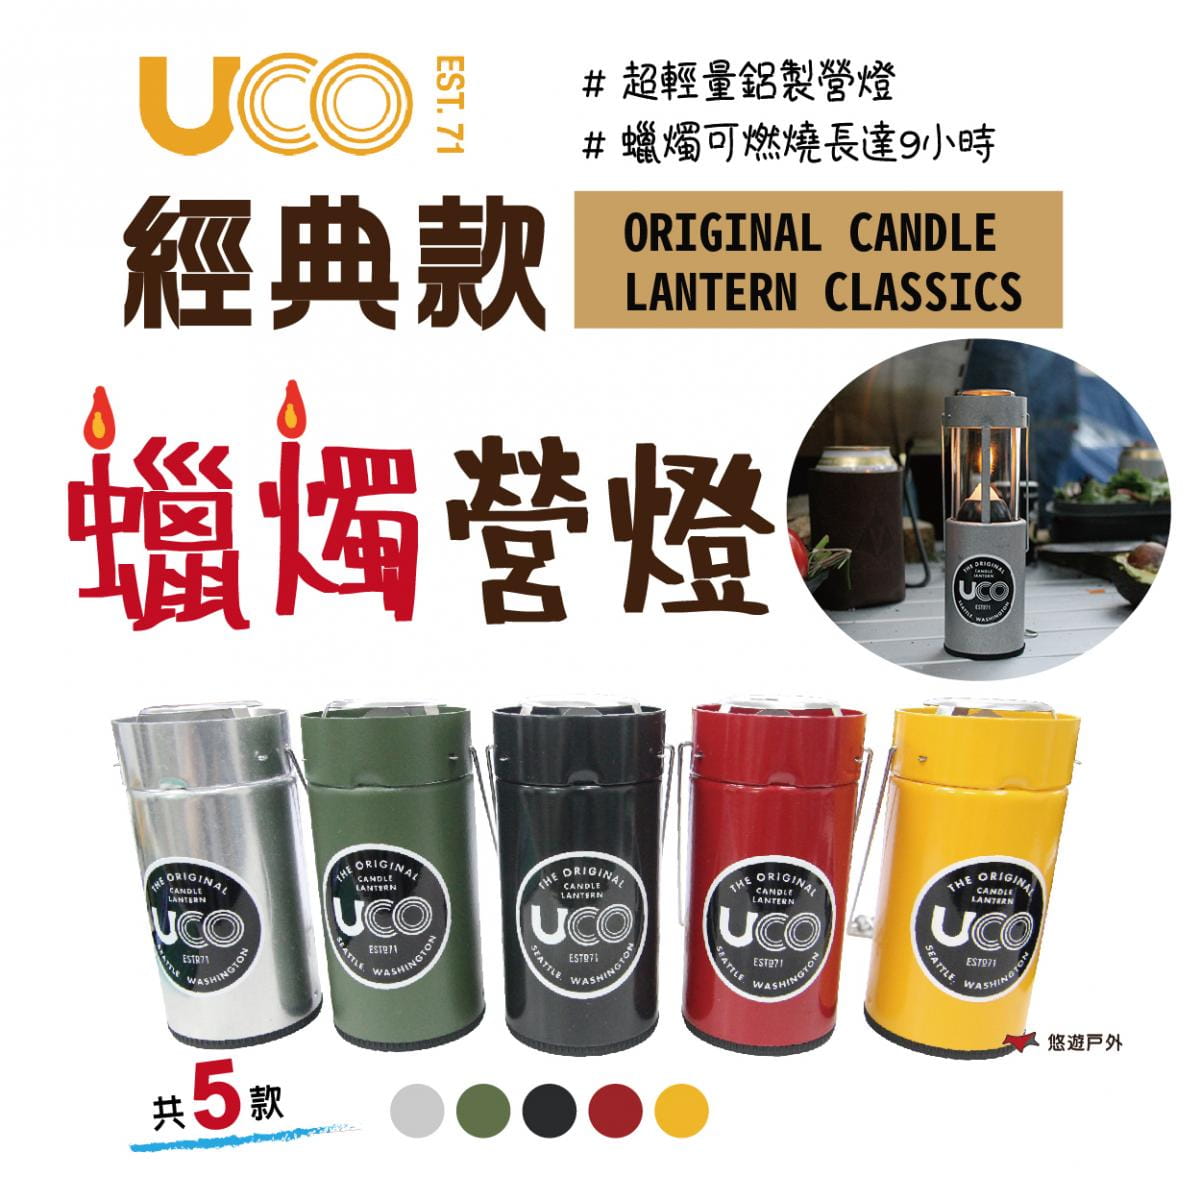 【美國 UCO】蠟燭營燈 經典款EST.71_銀色 (悠遊戶外) 0